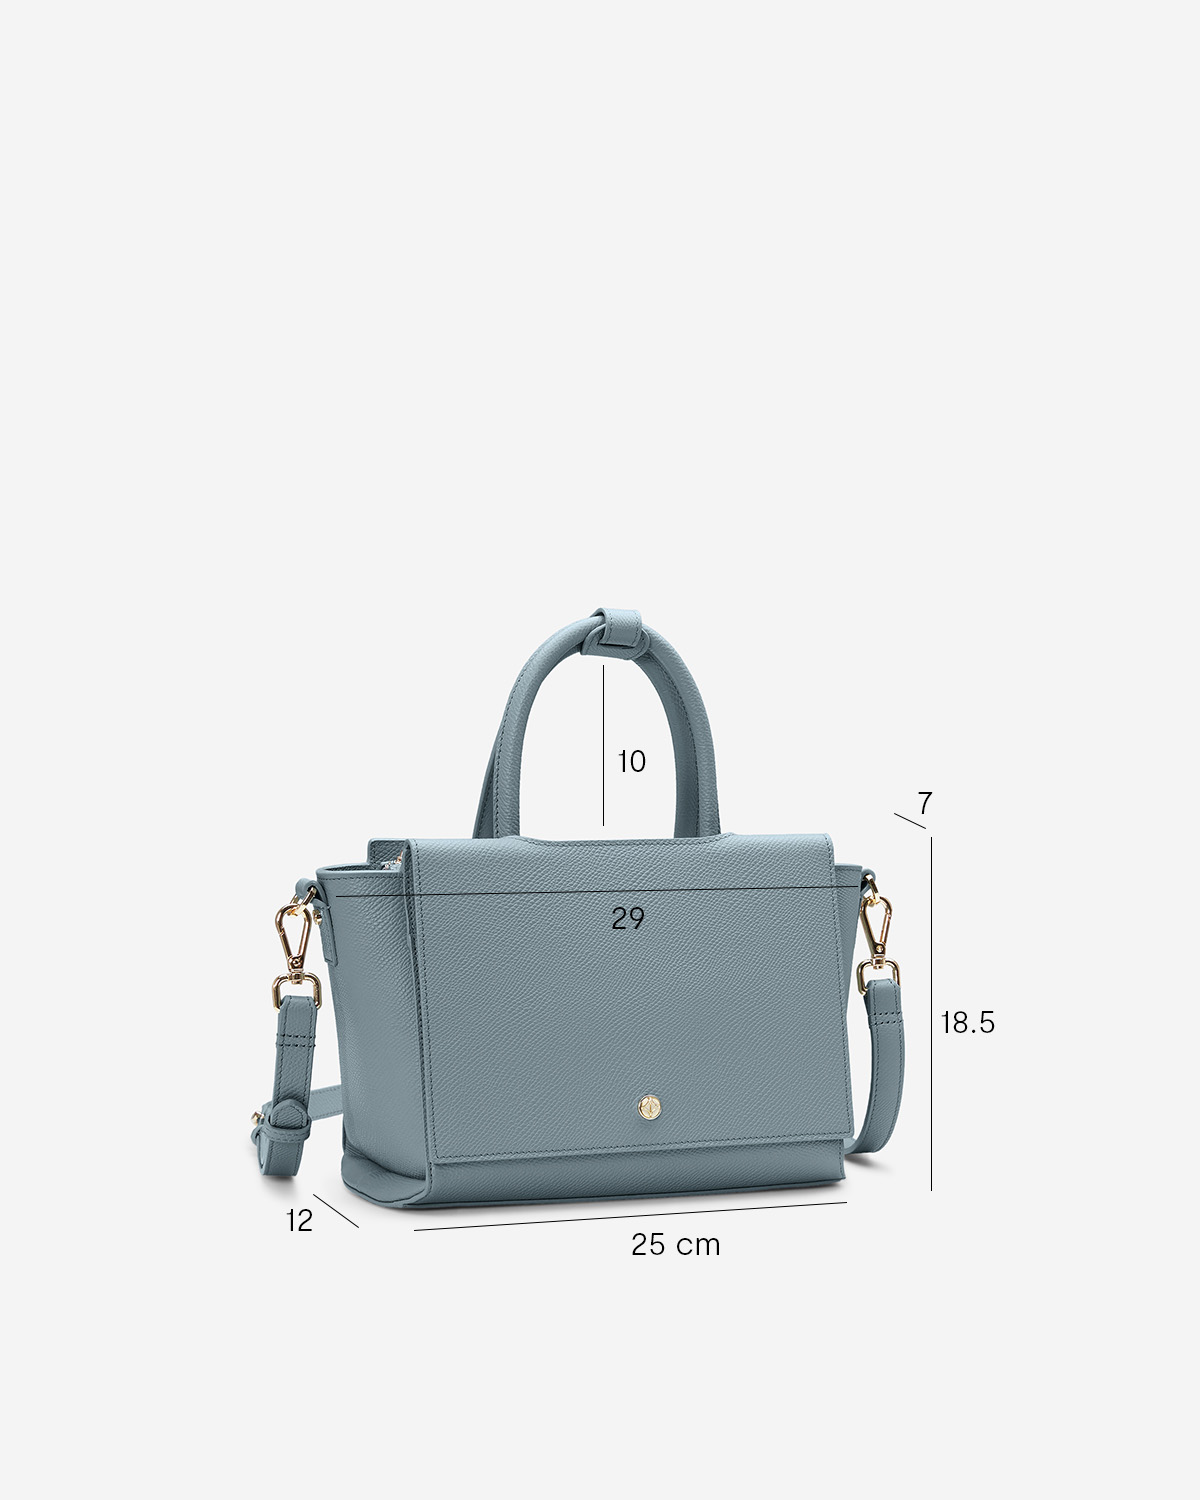 กระเป๋าถือหนังแท้ VERA Heidi Leather Handbag, ไซส์ 25 สี Cloud